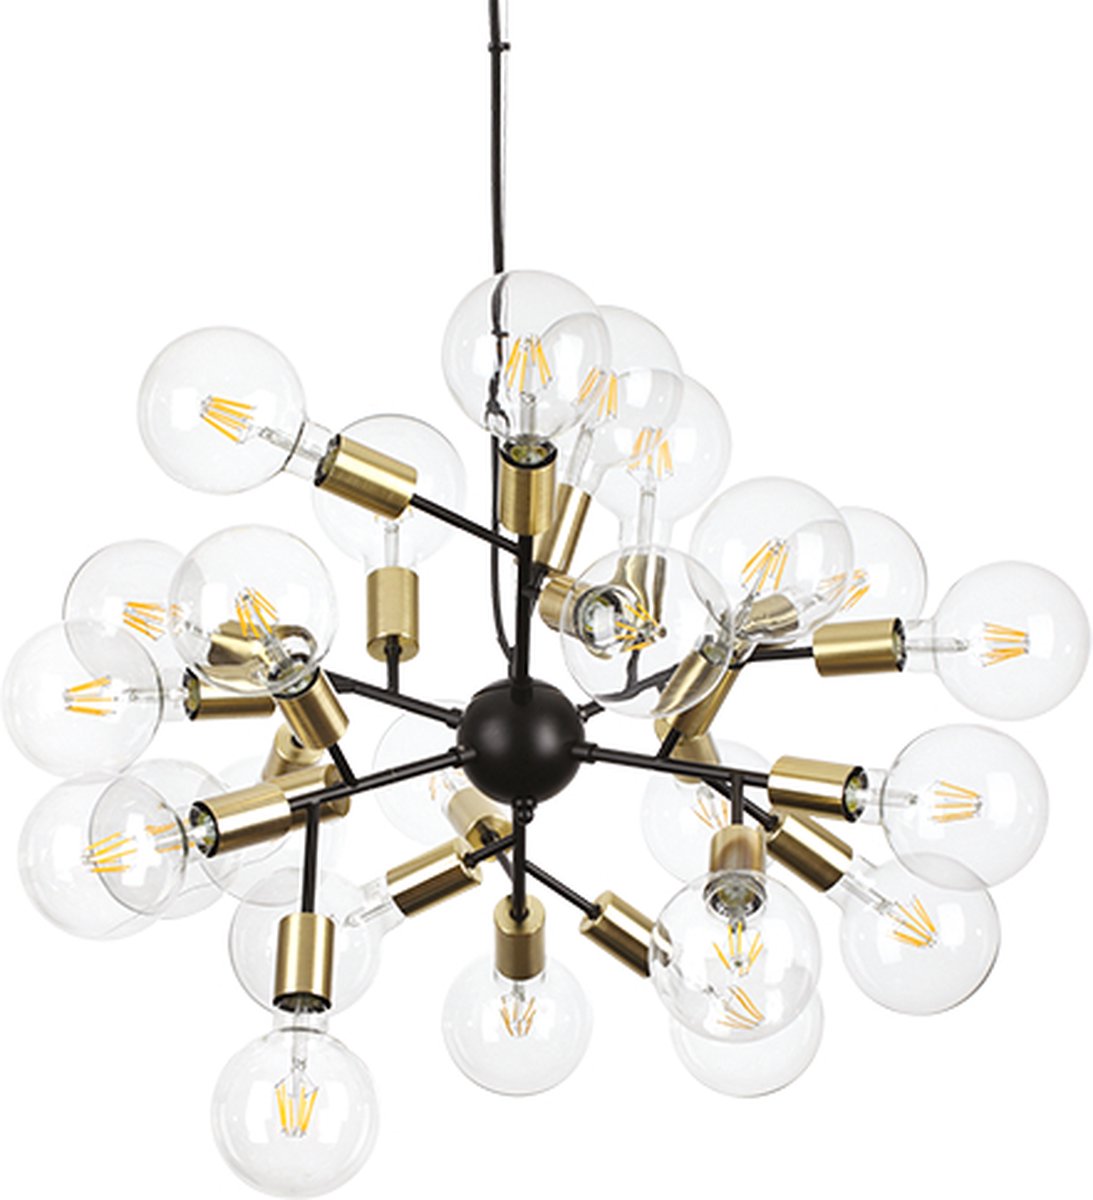 Ideal Lux - Spark - Hanglamp - Metaal - E27 - Zwart - Voor binnen - Lampen - Woonkamer - Eetkamer - Keuken